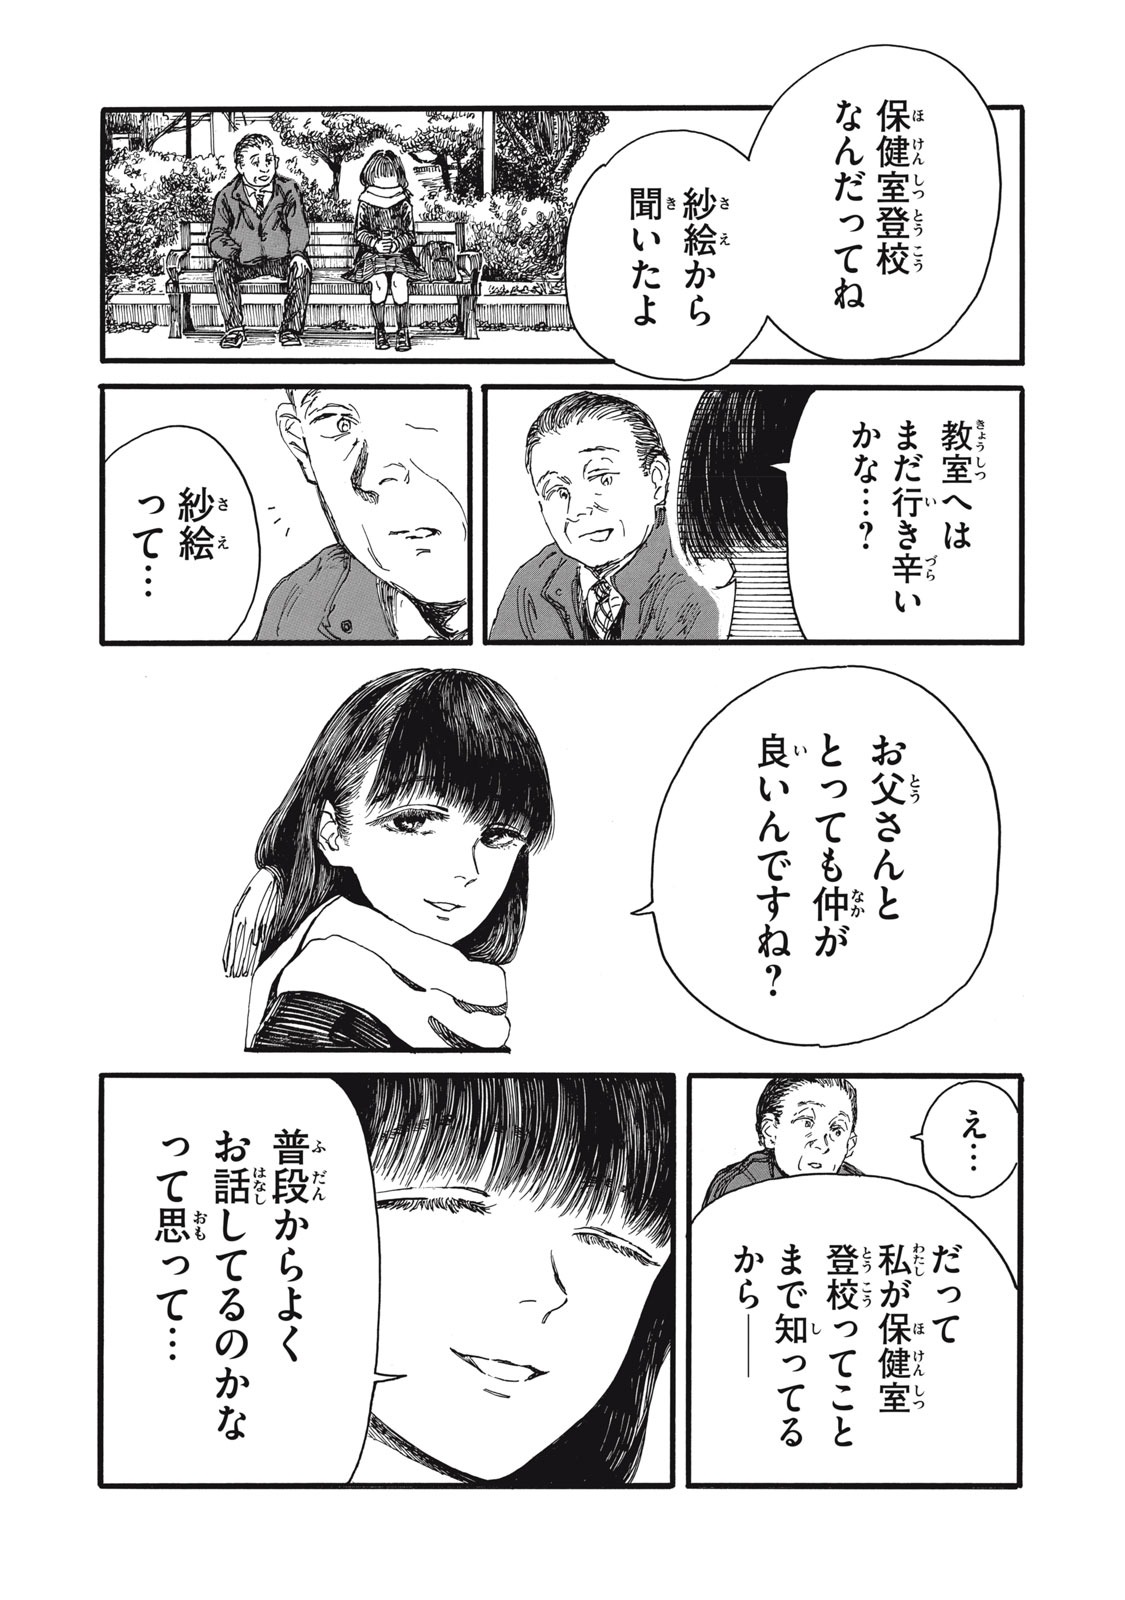 Watashi no Hara no Naka no Bakemono - Chapter 39 - Page 14